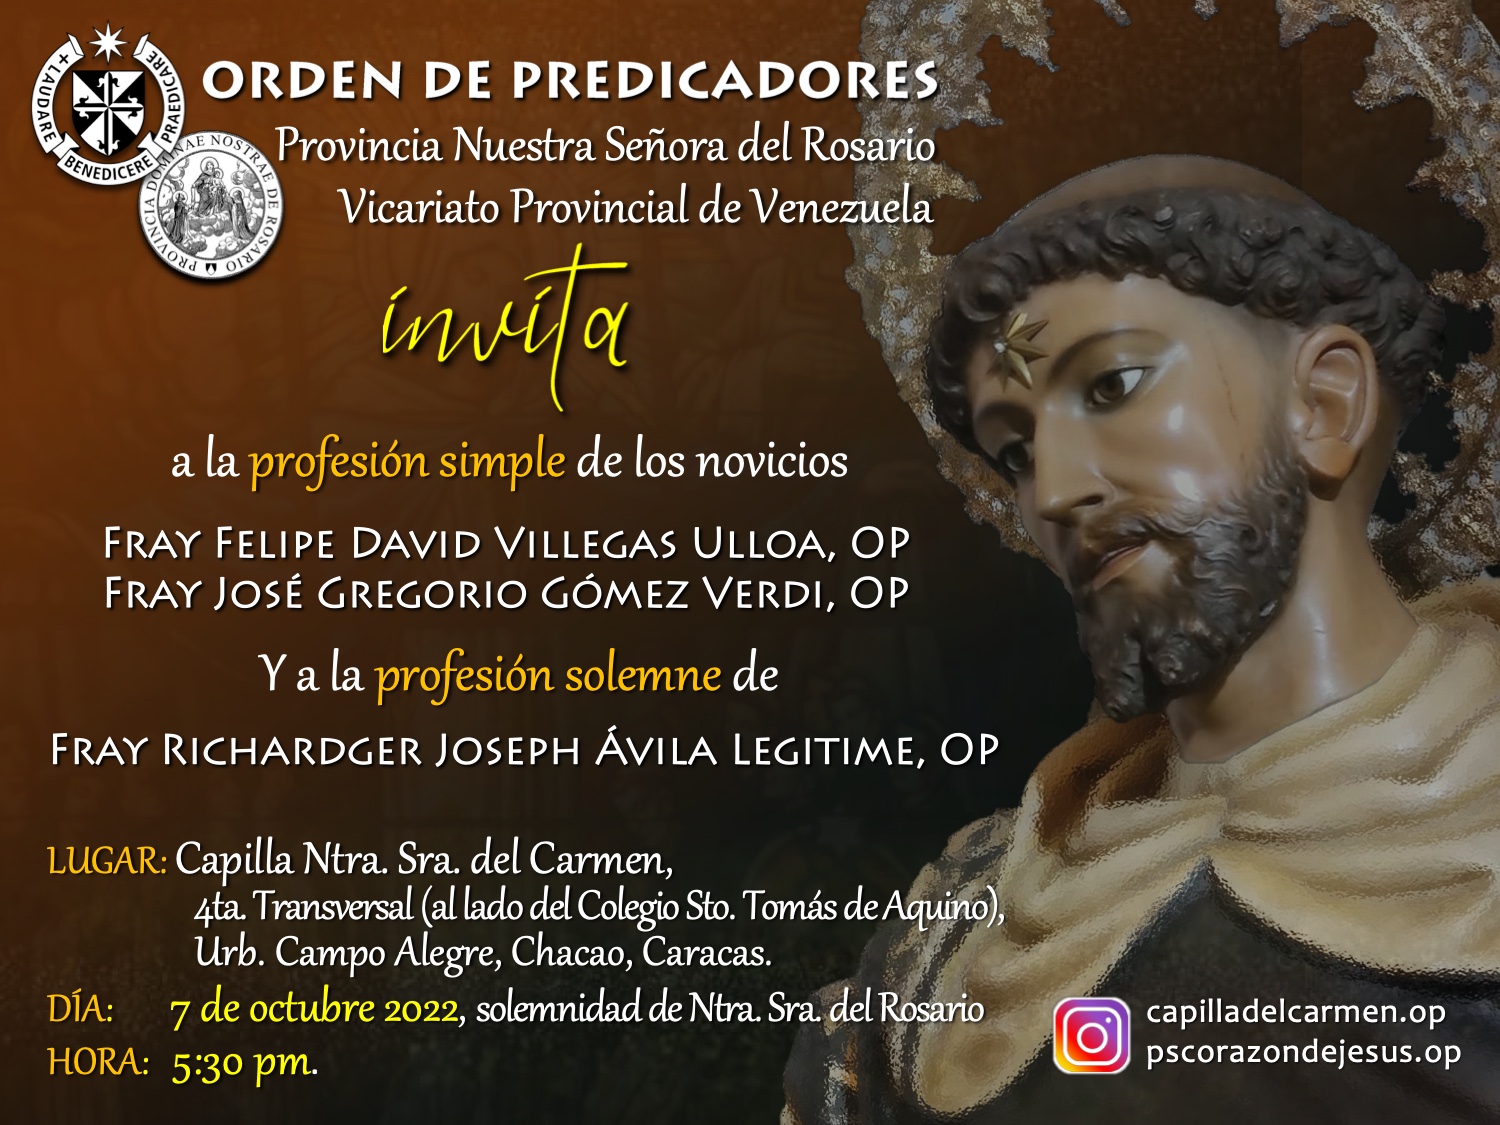 Invitation of Simple/ Solemn profession in Venezuela